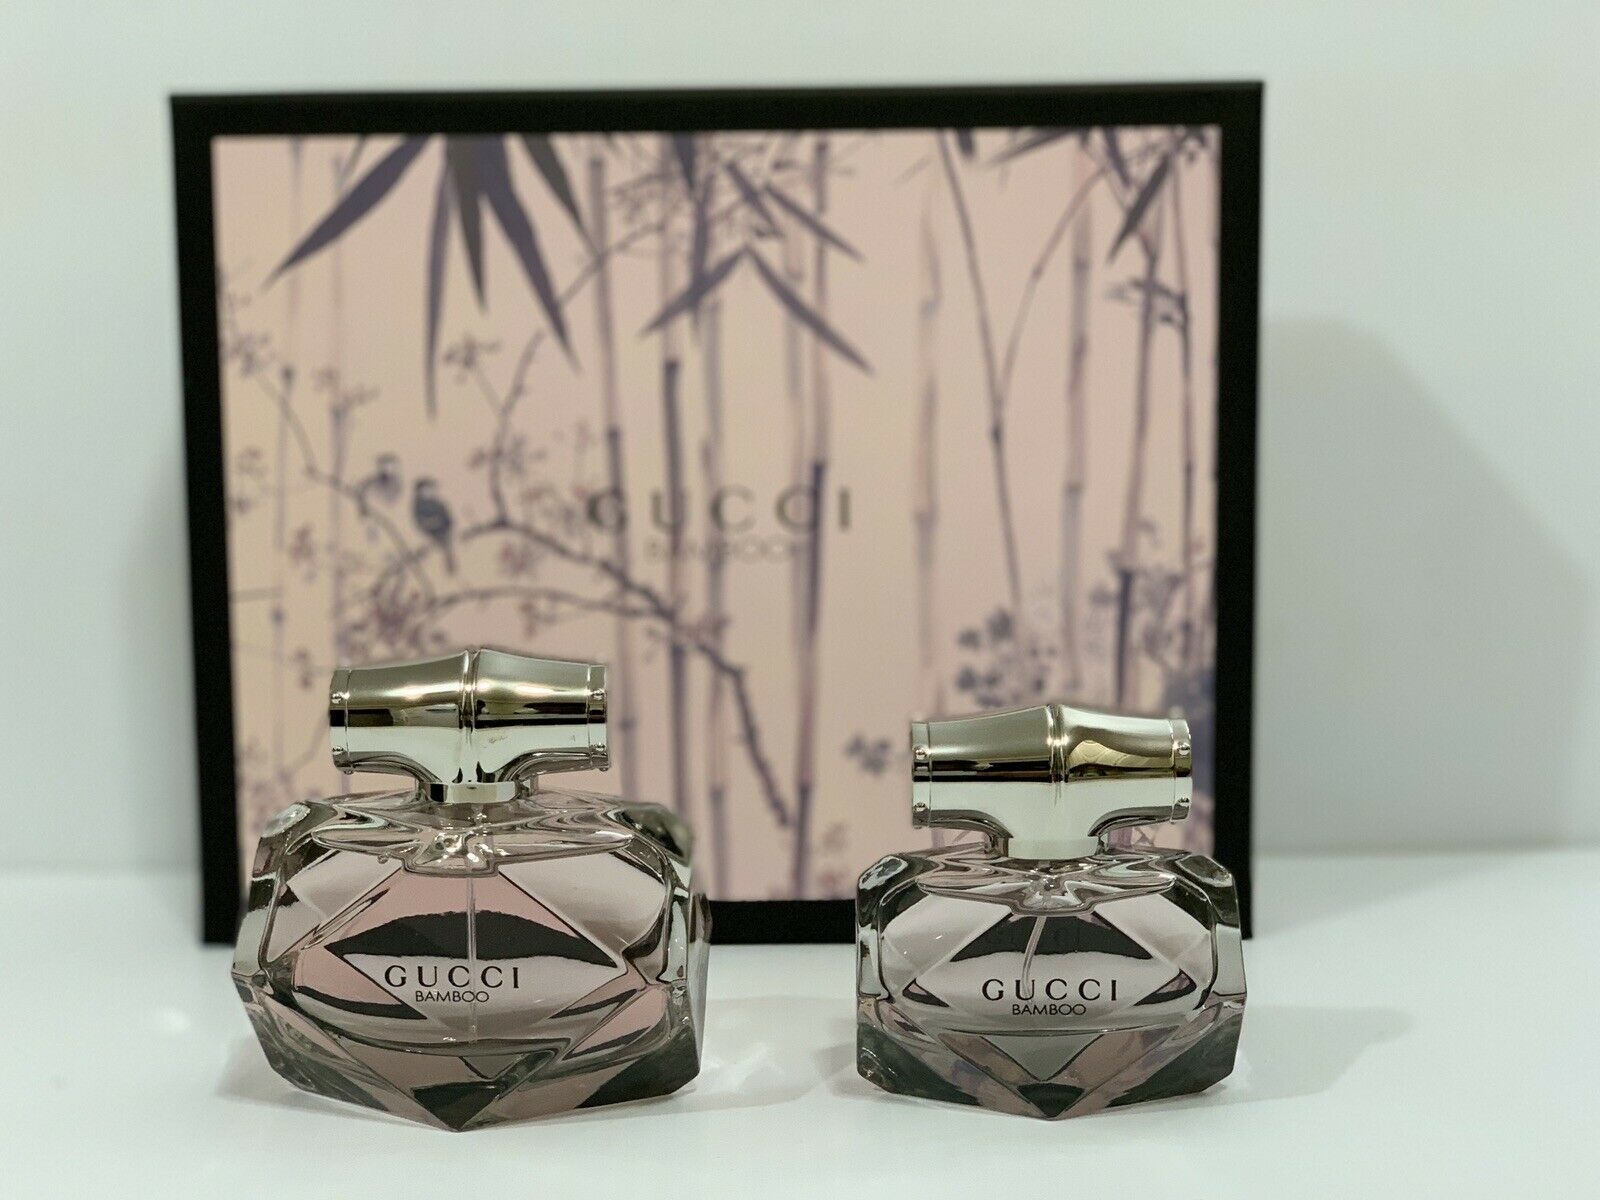 Aaaaaaaaagucci bamboo perfume gift 2 pcs set